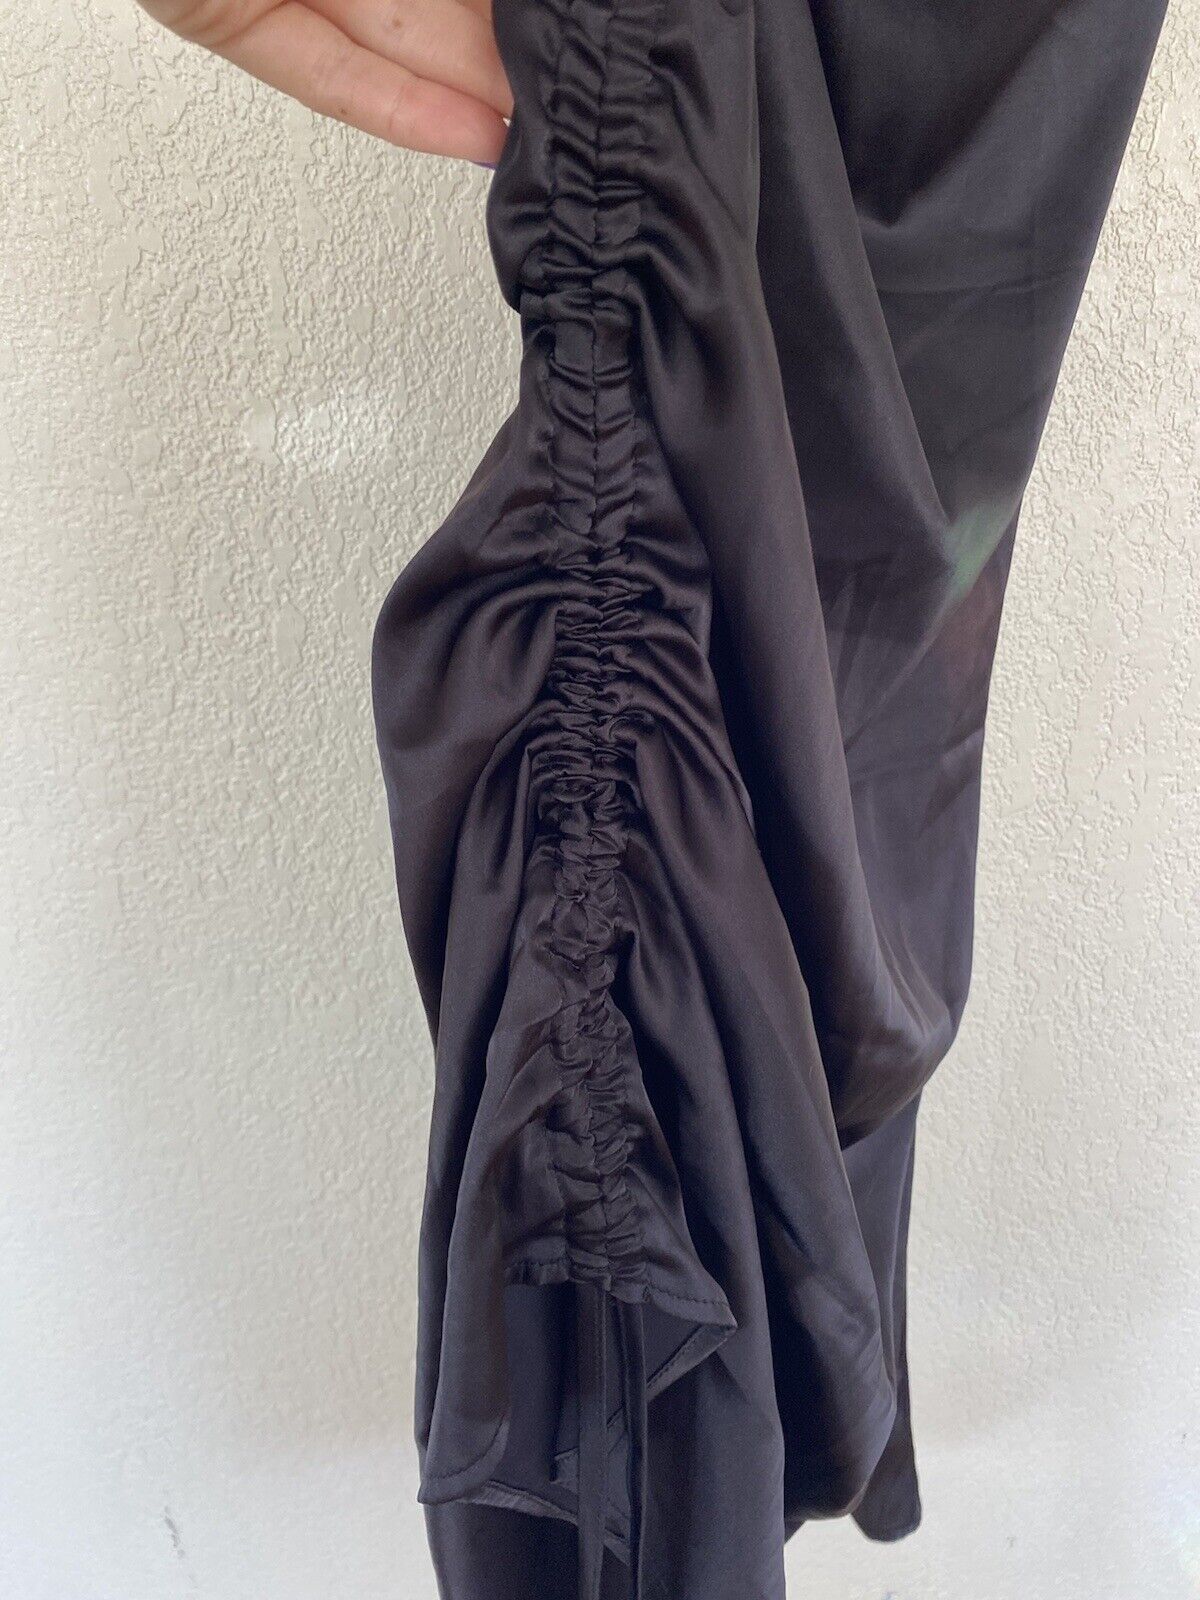 Black Satin Mini Dress - Unbranded - Women’s Large # 2651